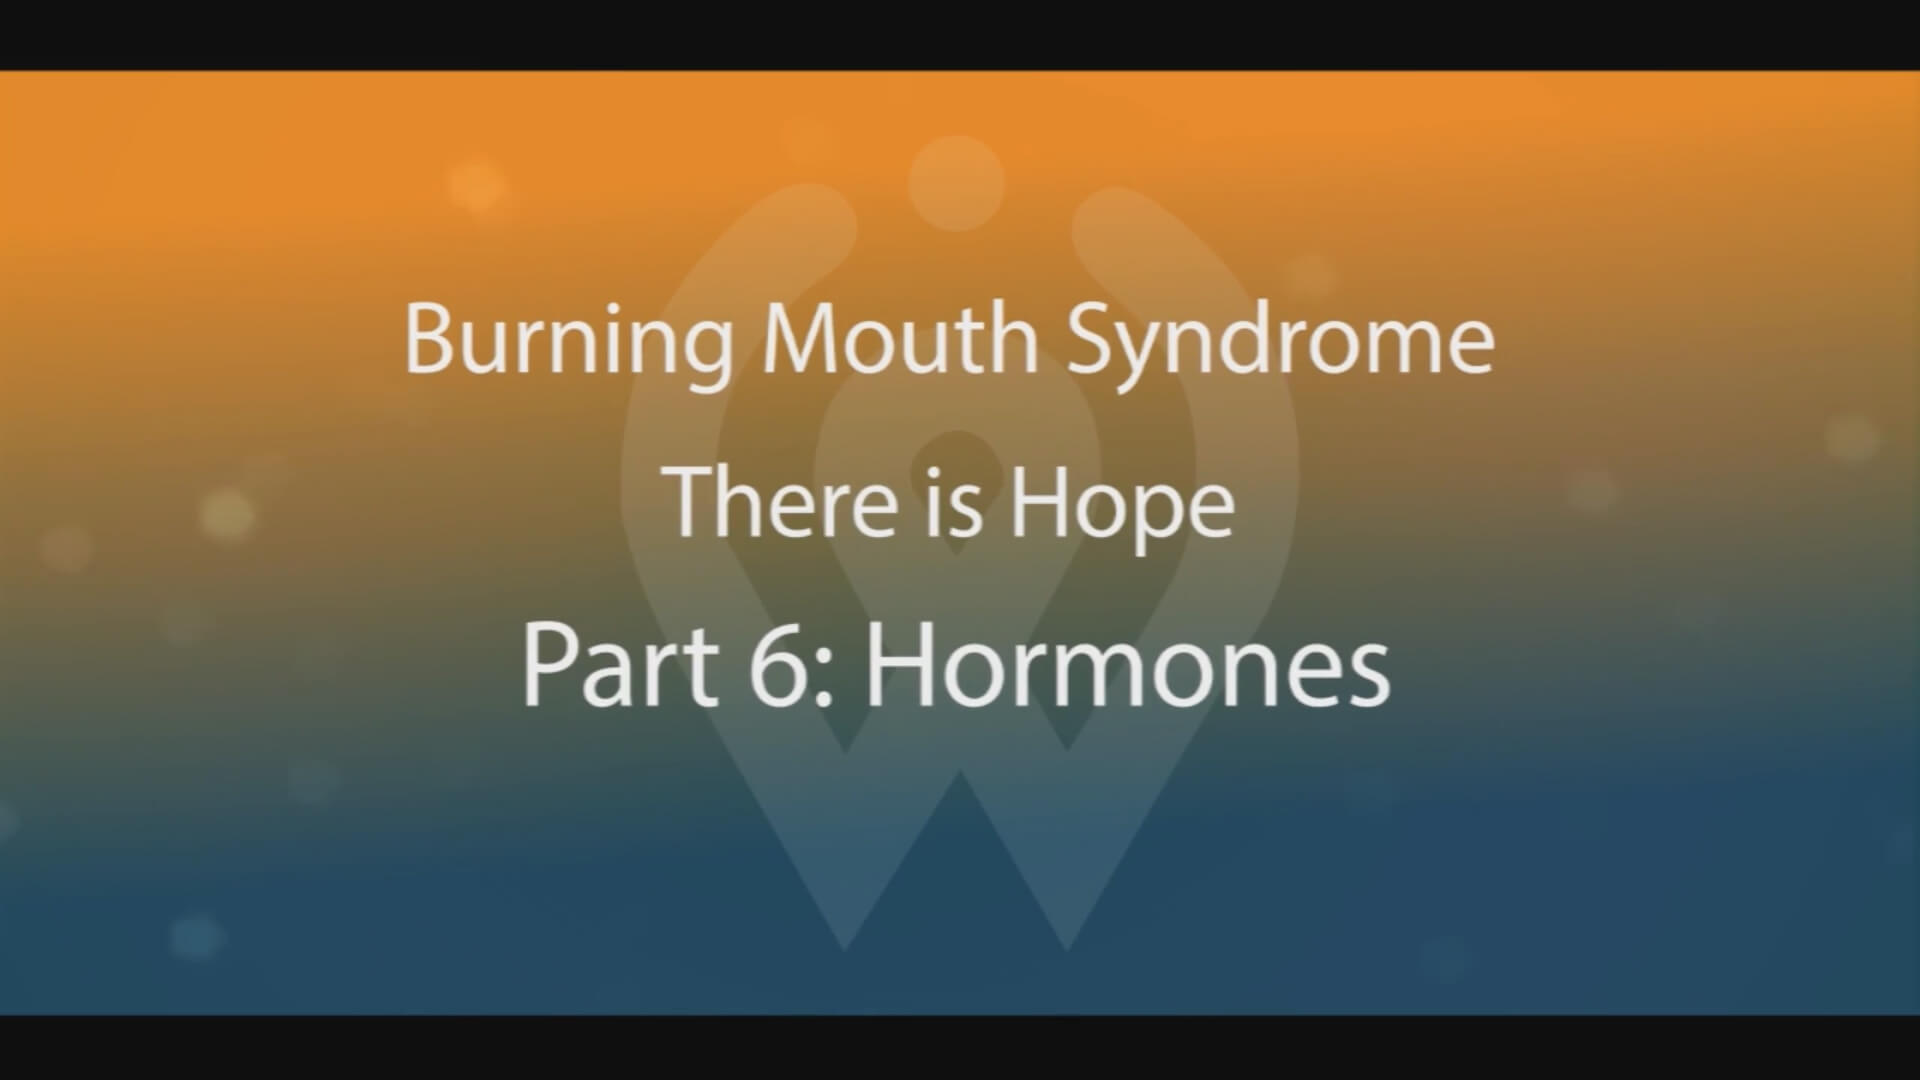 Video Part 6 - Hormones